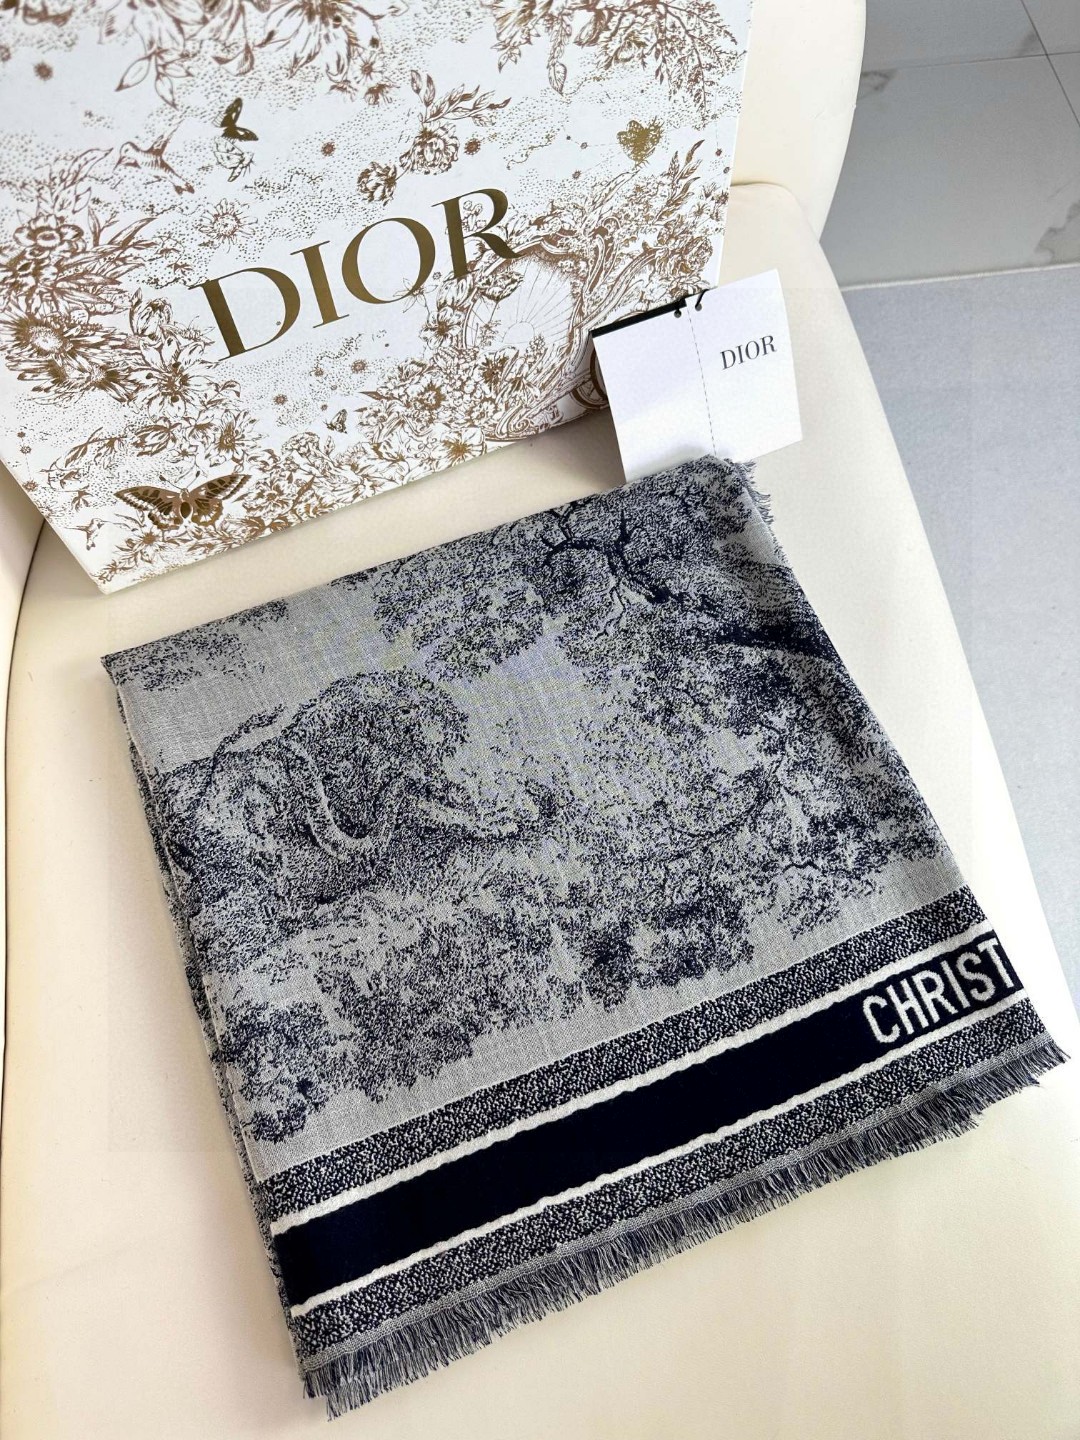 ️气质出众的不得了！！！Dior的稀有限量设计！！！这款属于我声嘶力竭推荐新朋友老朋友都要收高级的特殊面